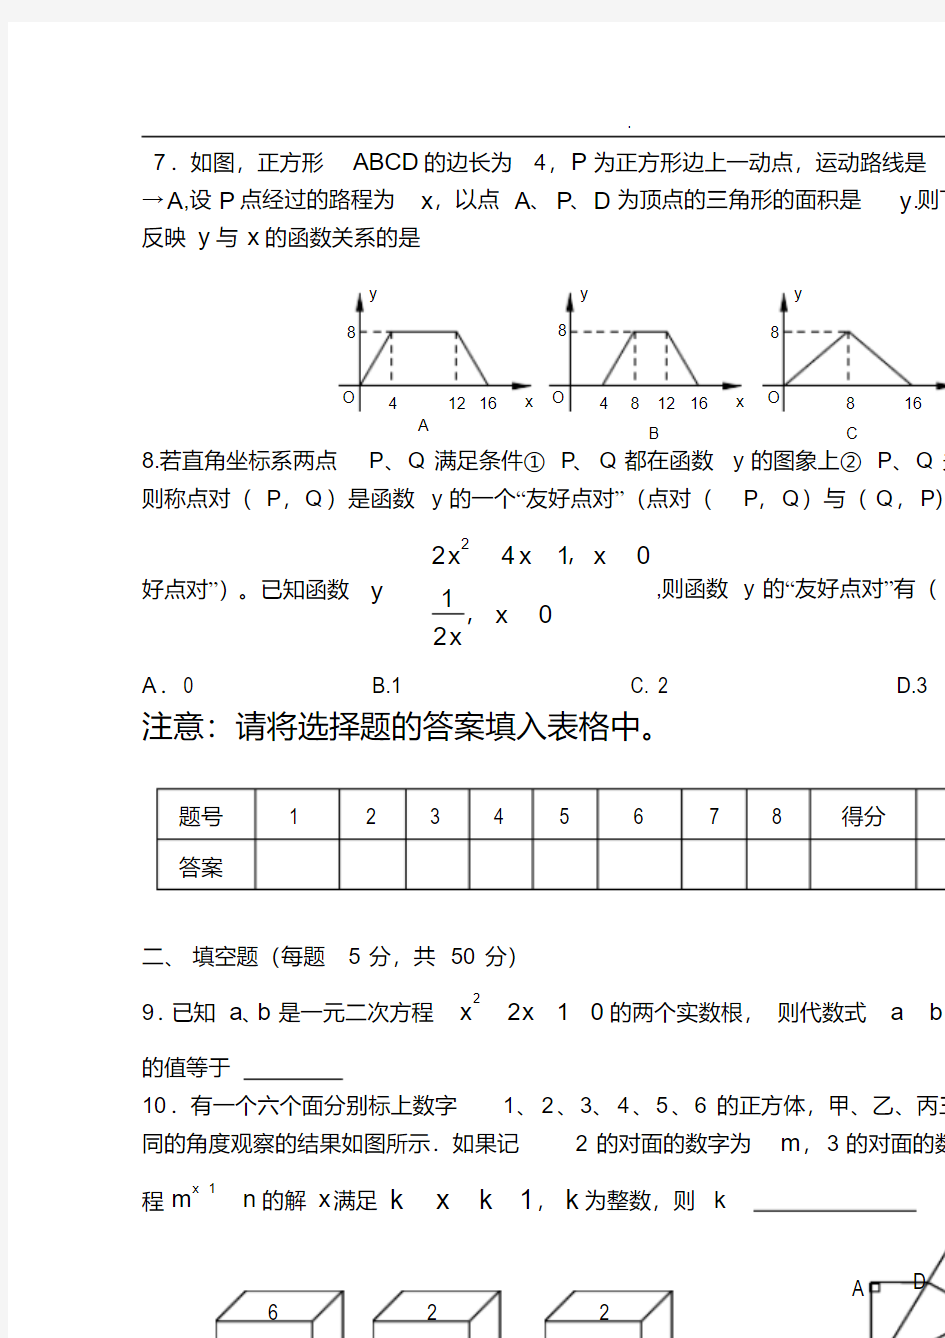 广雅中学高一新生分班考试数学试卷(含答案)